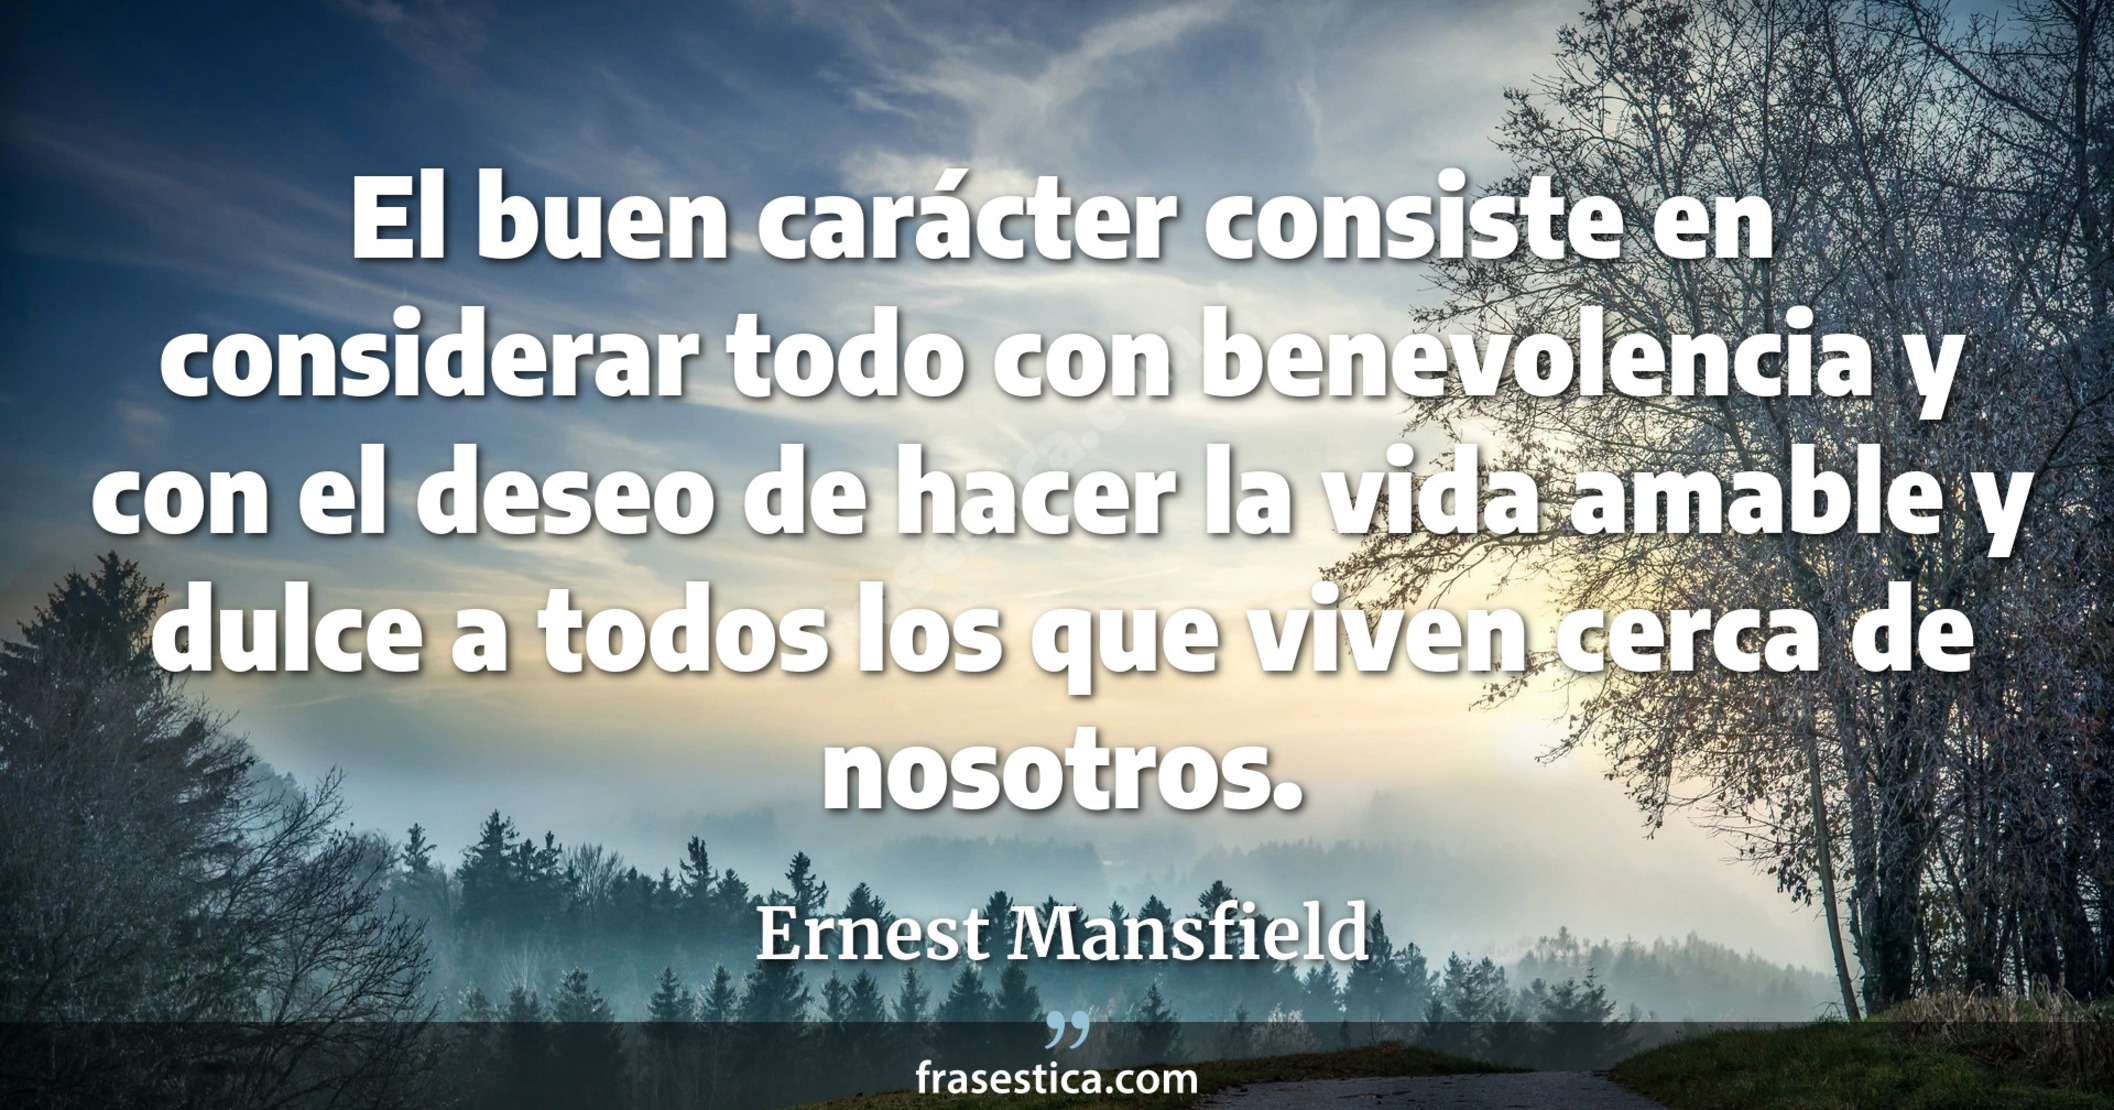 El buen carácter consiste en considerar todo con benevolencia y con el deseo de hacer la vida amable y dulce a todos los que viven cerca de nosotros. - Ernest Mansfield